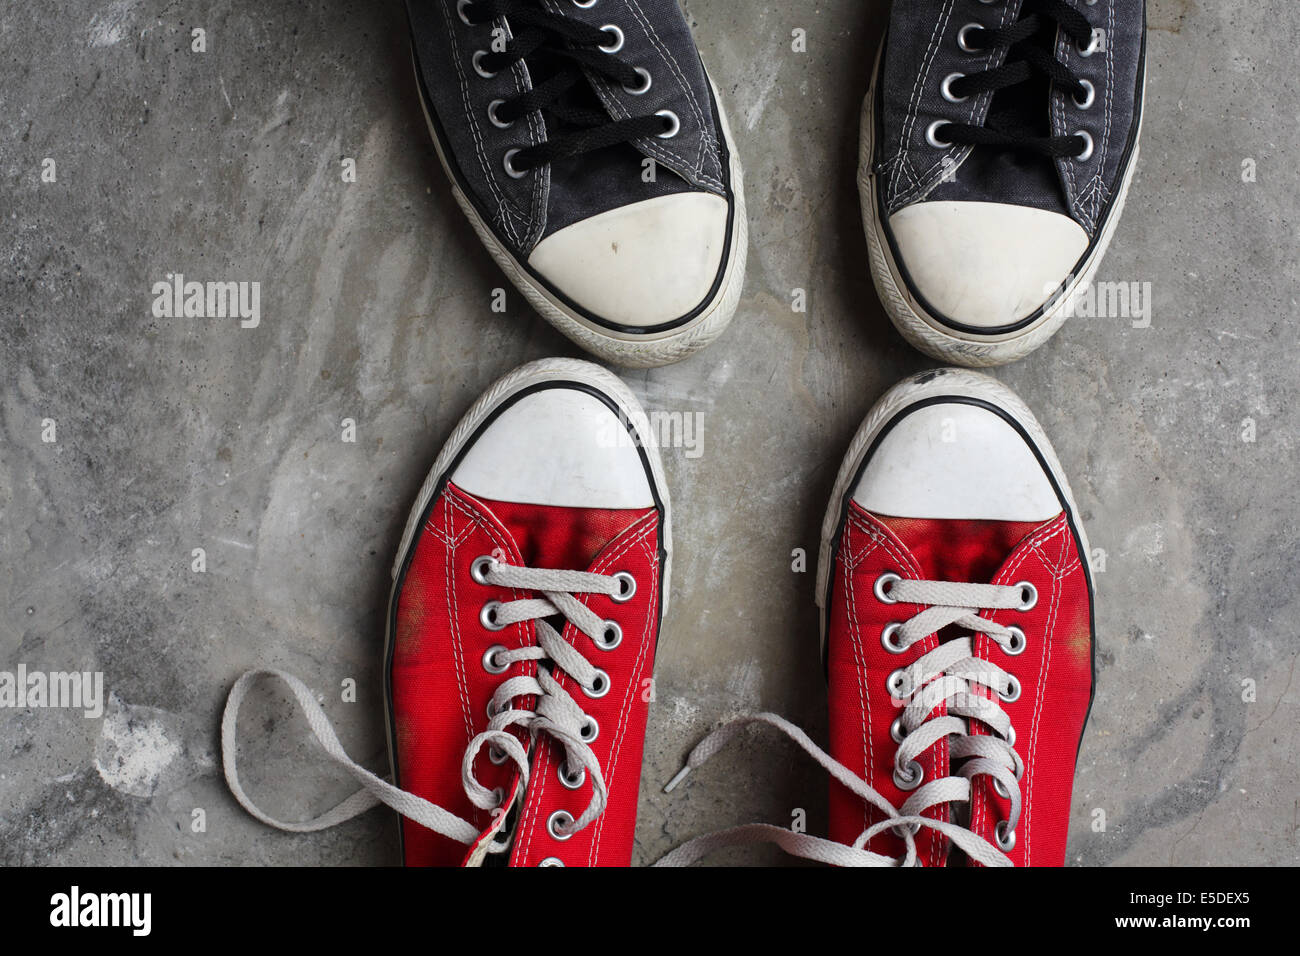 Deux paires de chaussures Converse, toe à toe, tourné contre un arrière-plan en béton Banque D'Images